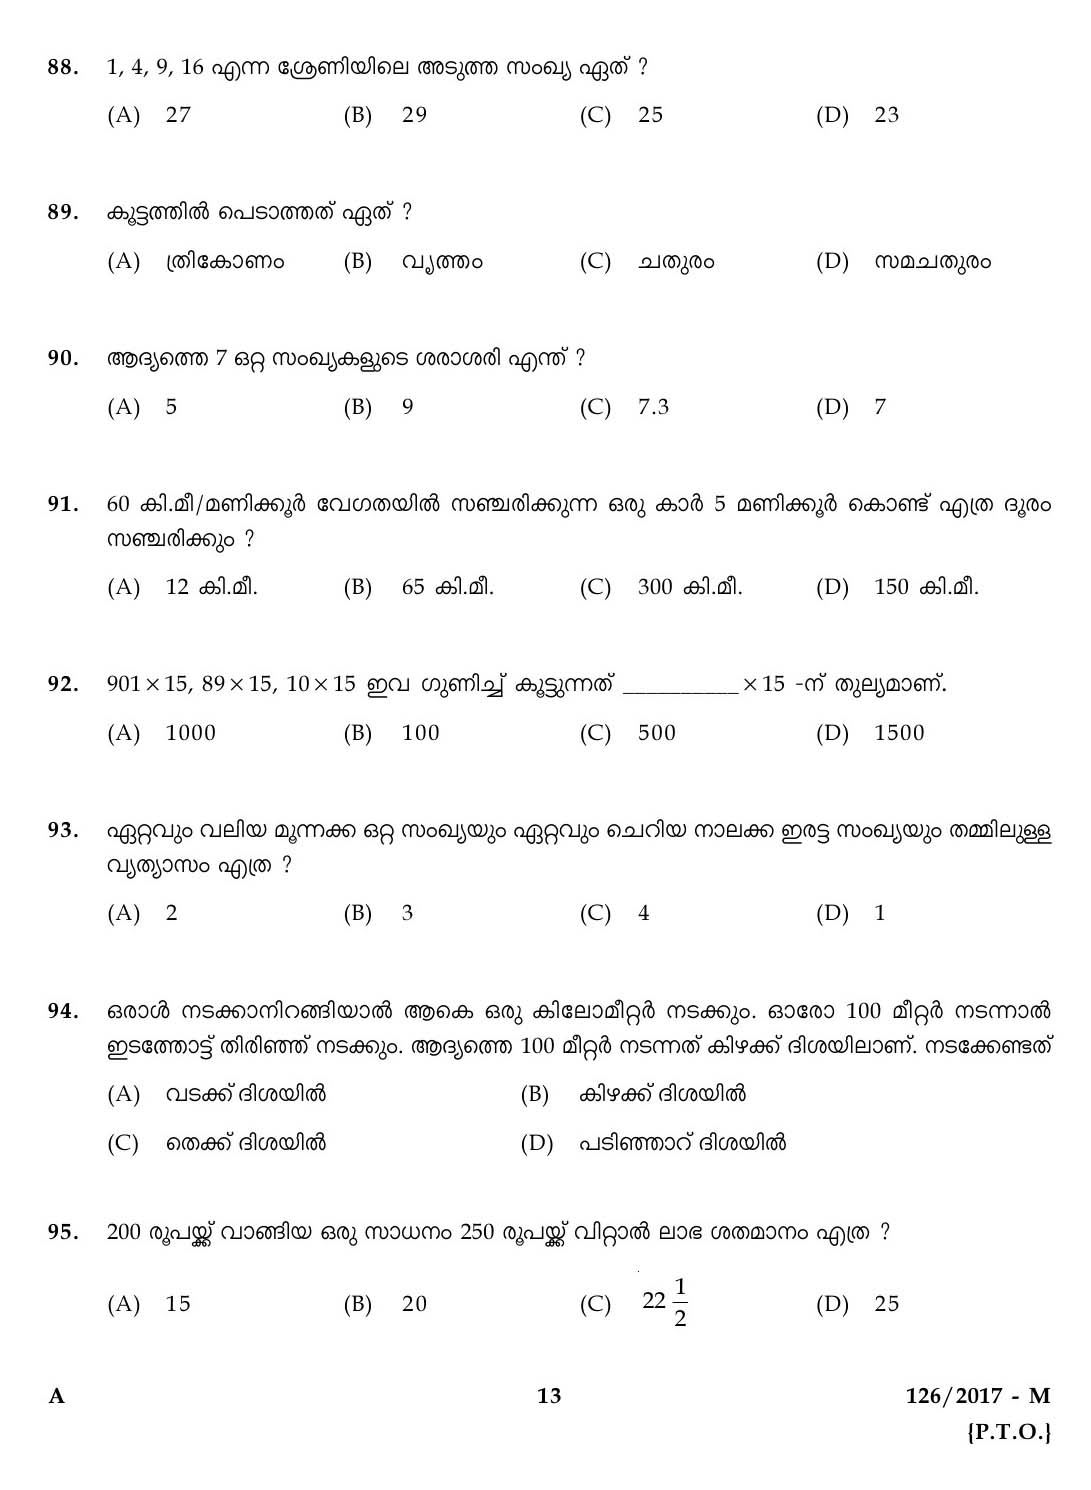 Kerala Last Grade Servants Exam 2017 Question Paper Code 1262017 M 12